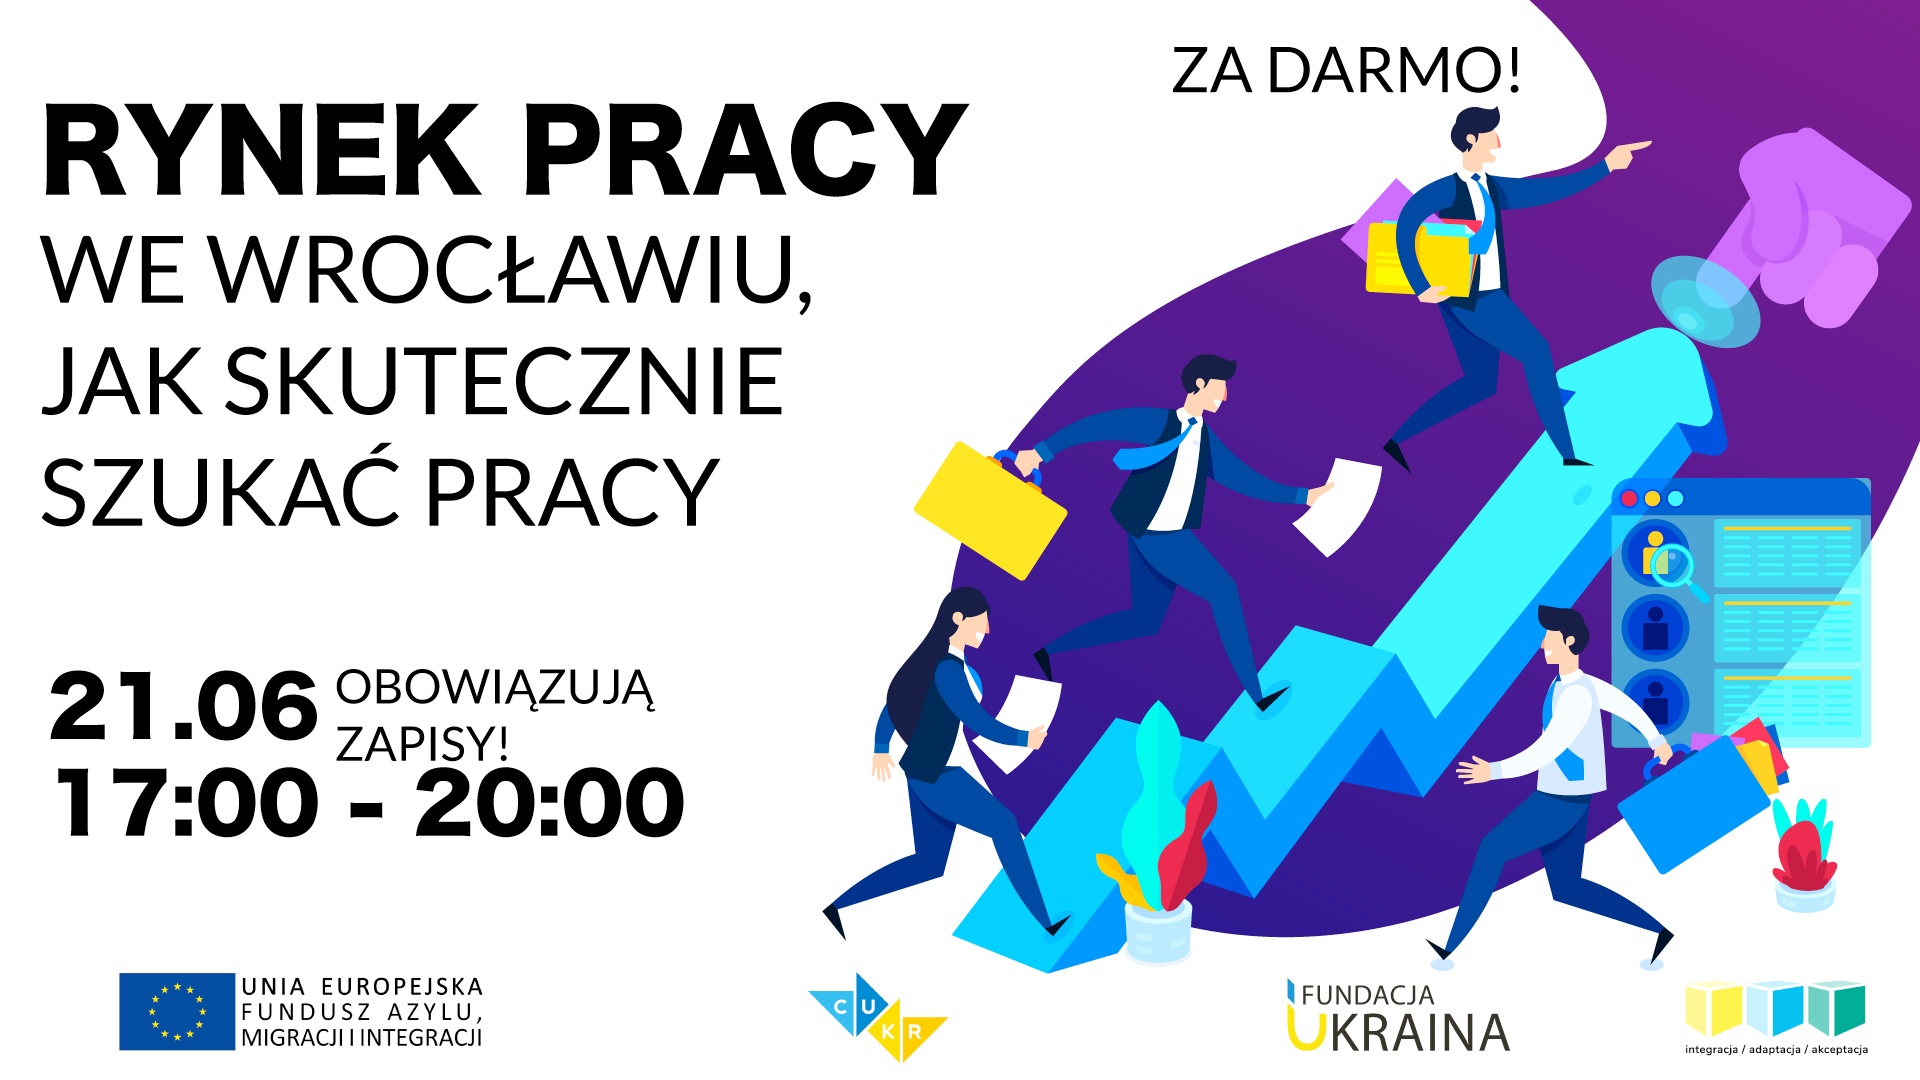 Семінар “Ринок праці у Вроцлаві, способи пошуку роботи” вже 21 червня!